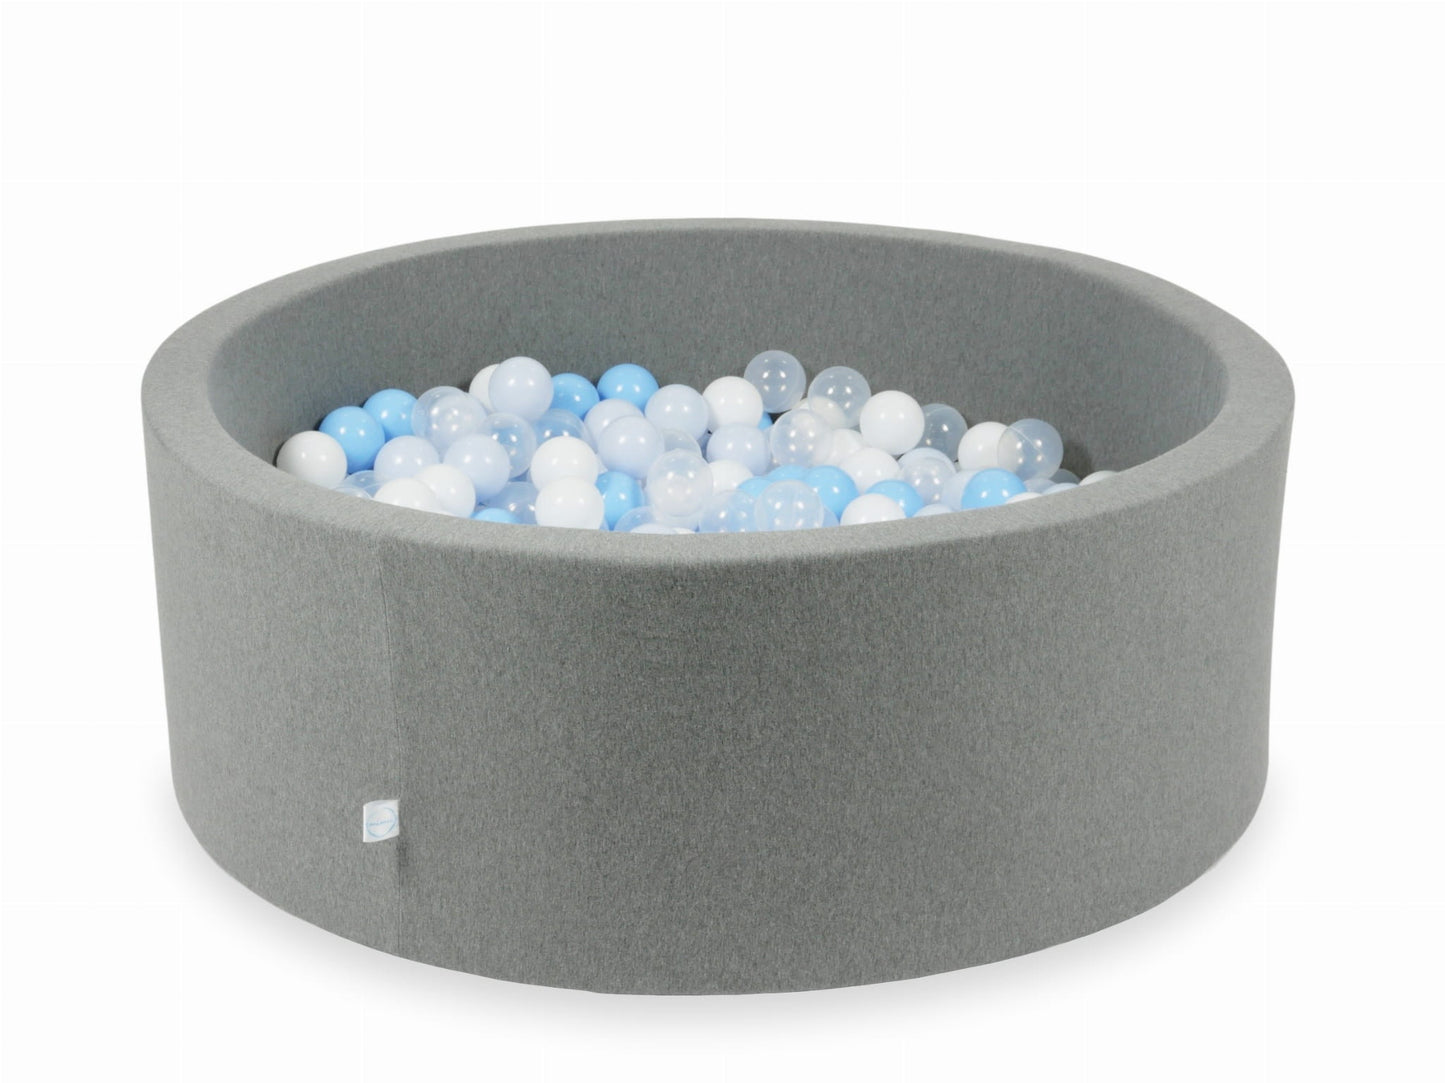 Piscine à Balles 110x40 grise avec balles 500 pcs (transparent, blanc, bleu clair, bleu clair, perle clair)